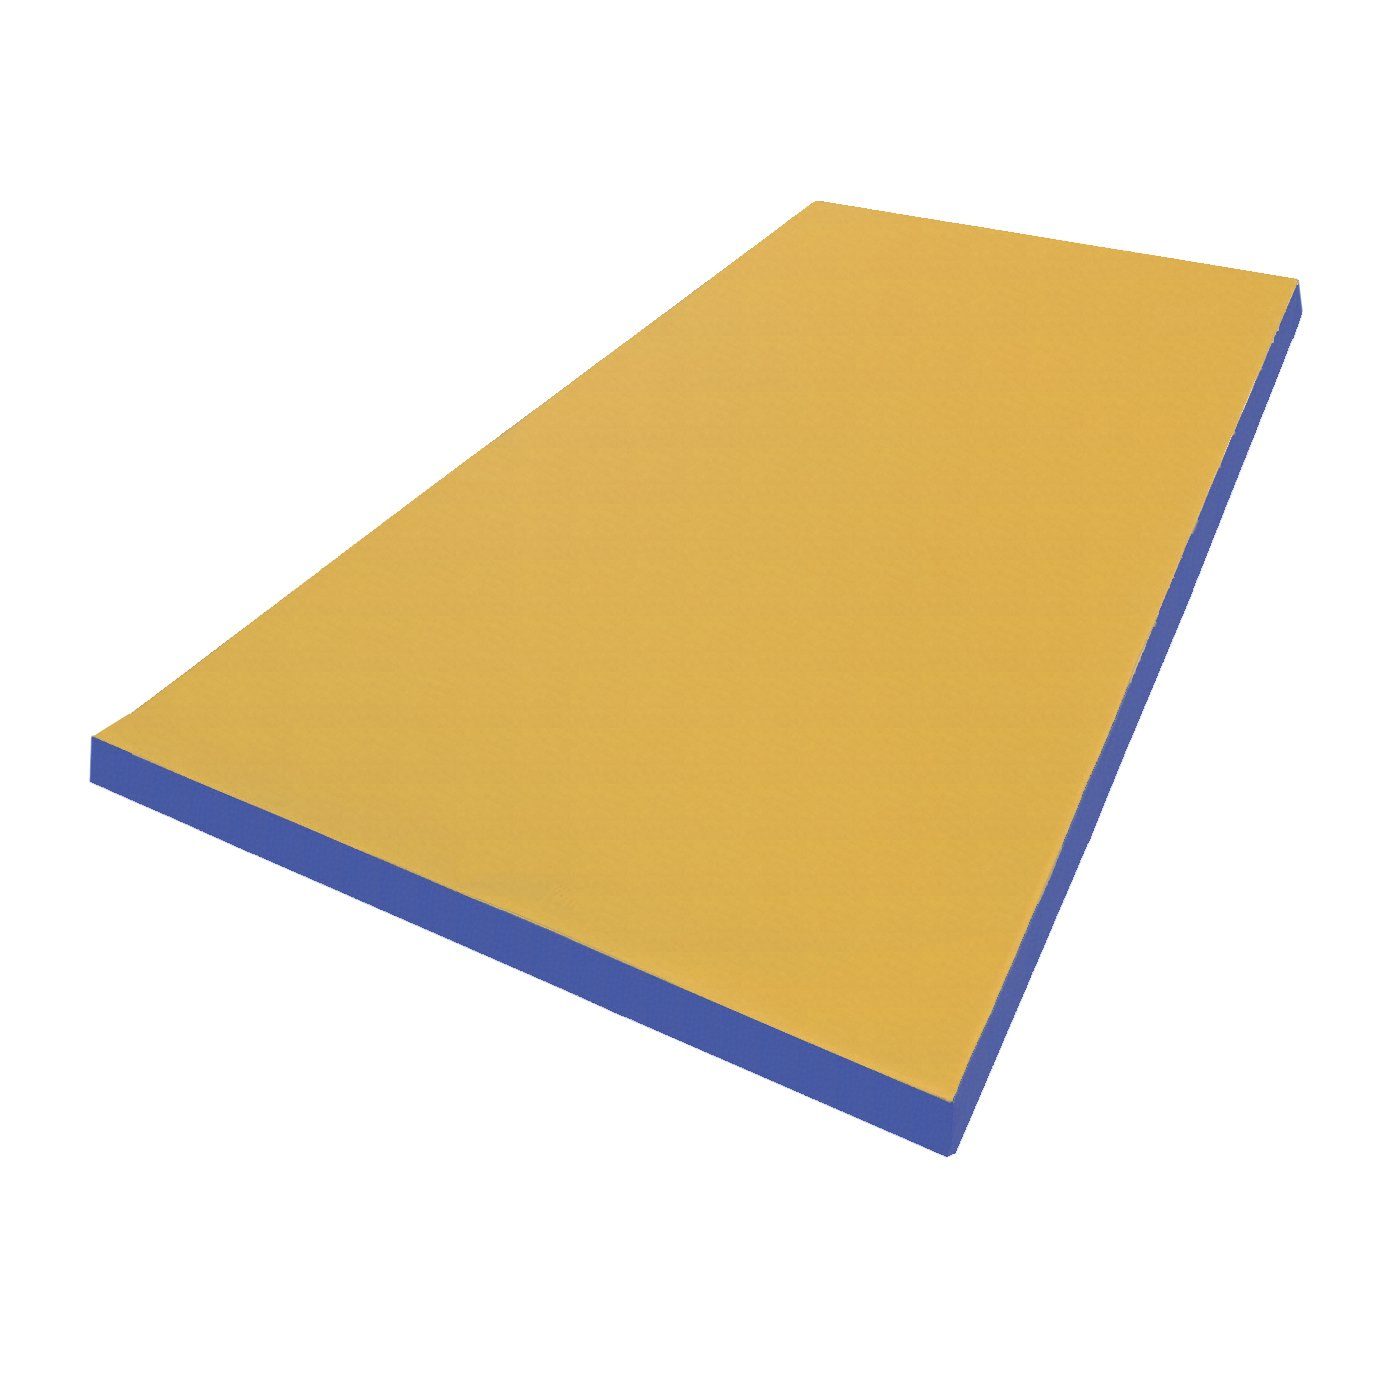 NiroSport Weichbodenmatte Turnmatte Gymnastikmatte Schutzmatte Fitnessmatte 150x100x8cm (1er-Pack), abwaschbar, robust gelb